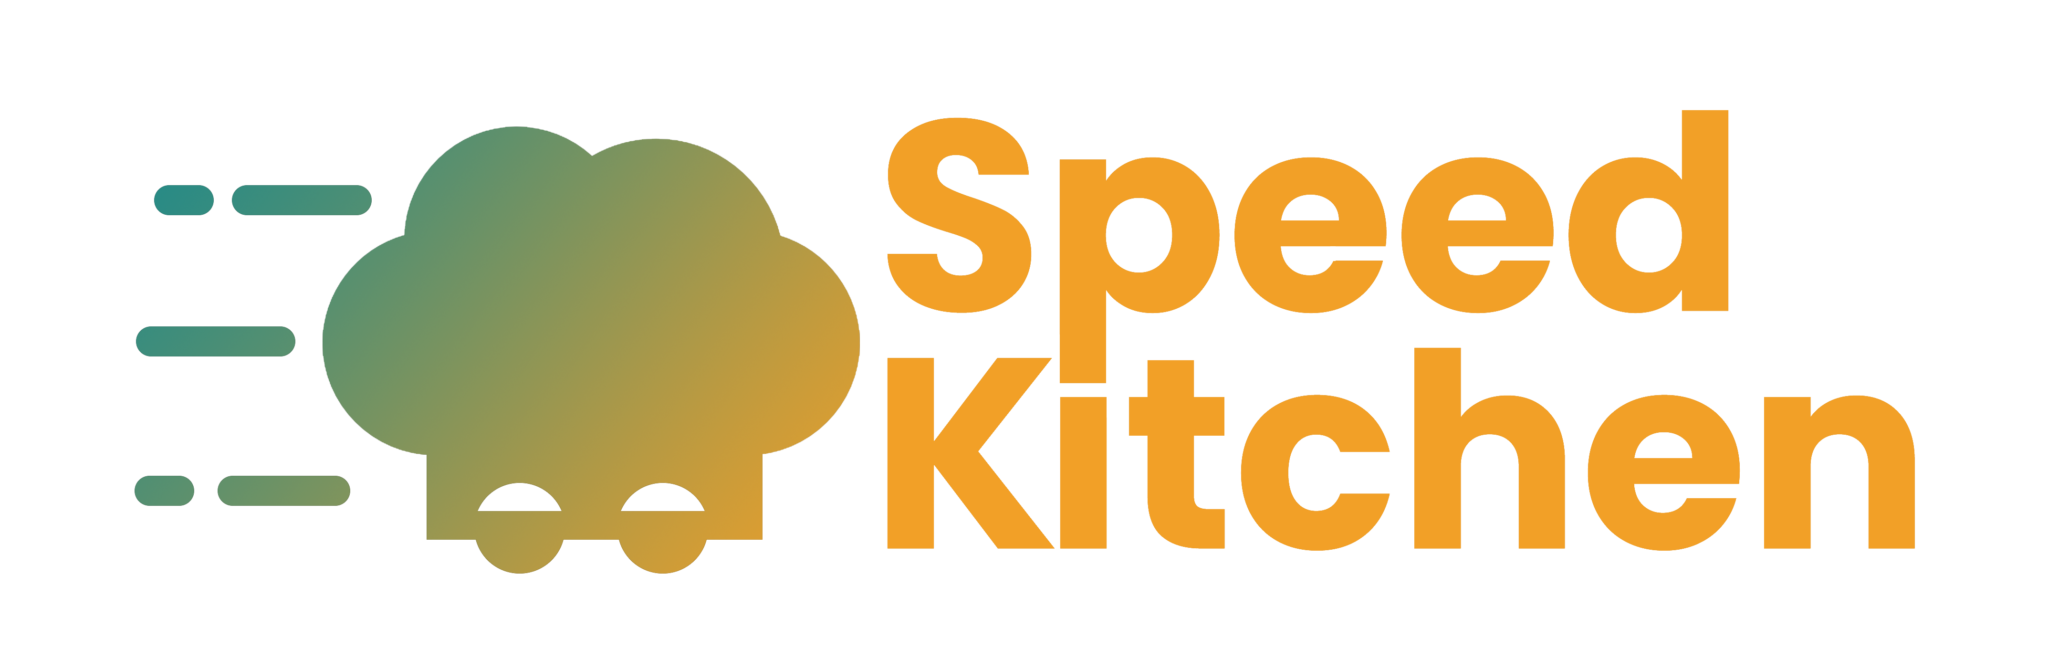 speed kitchen